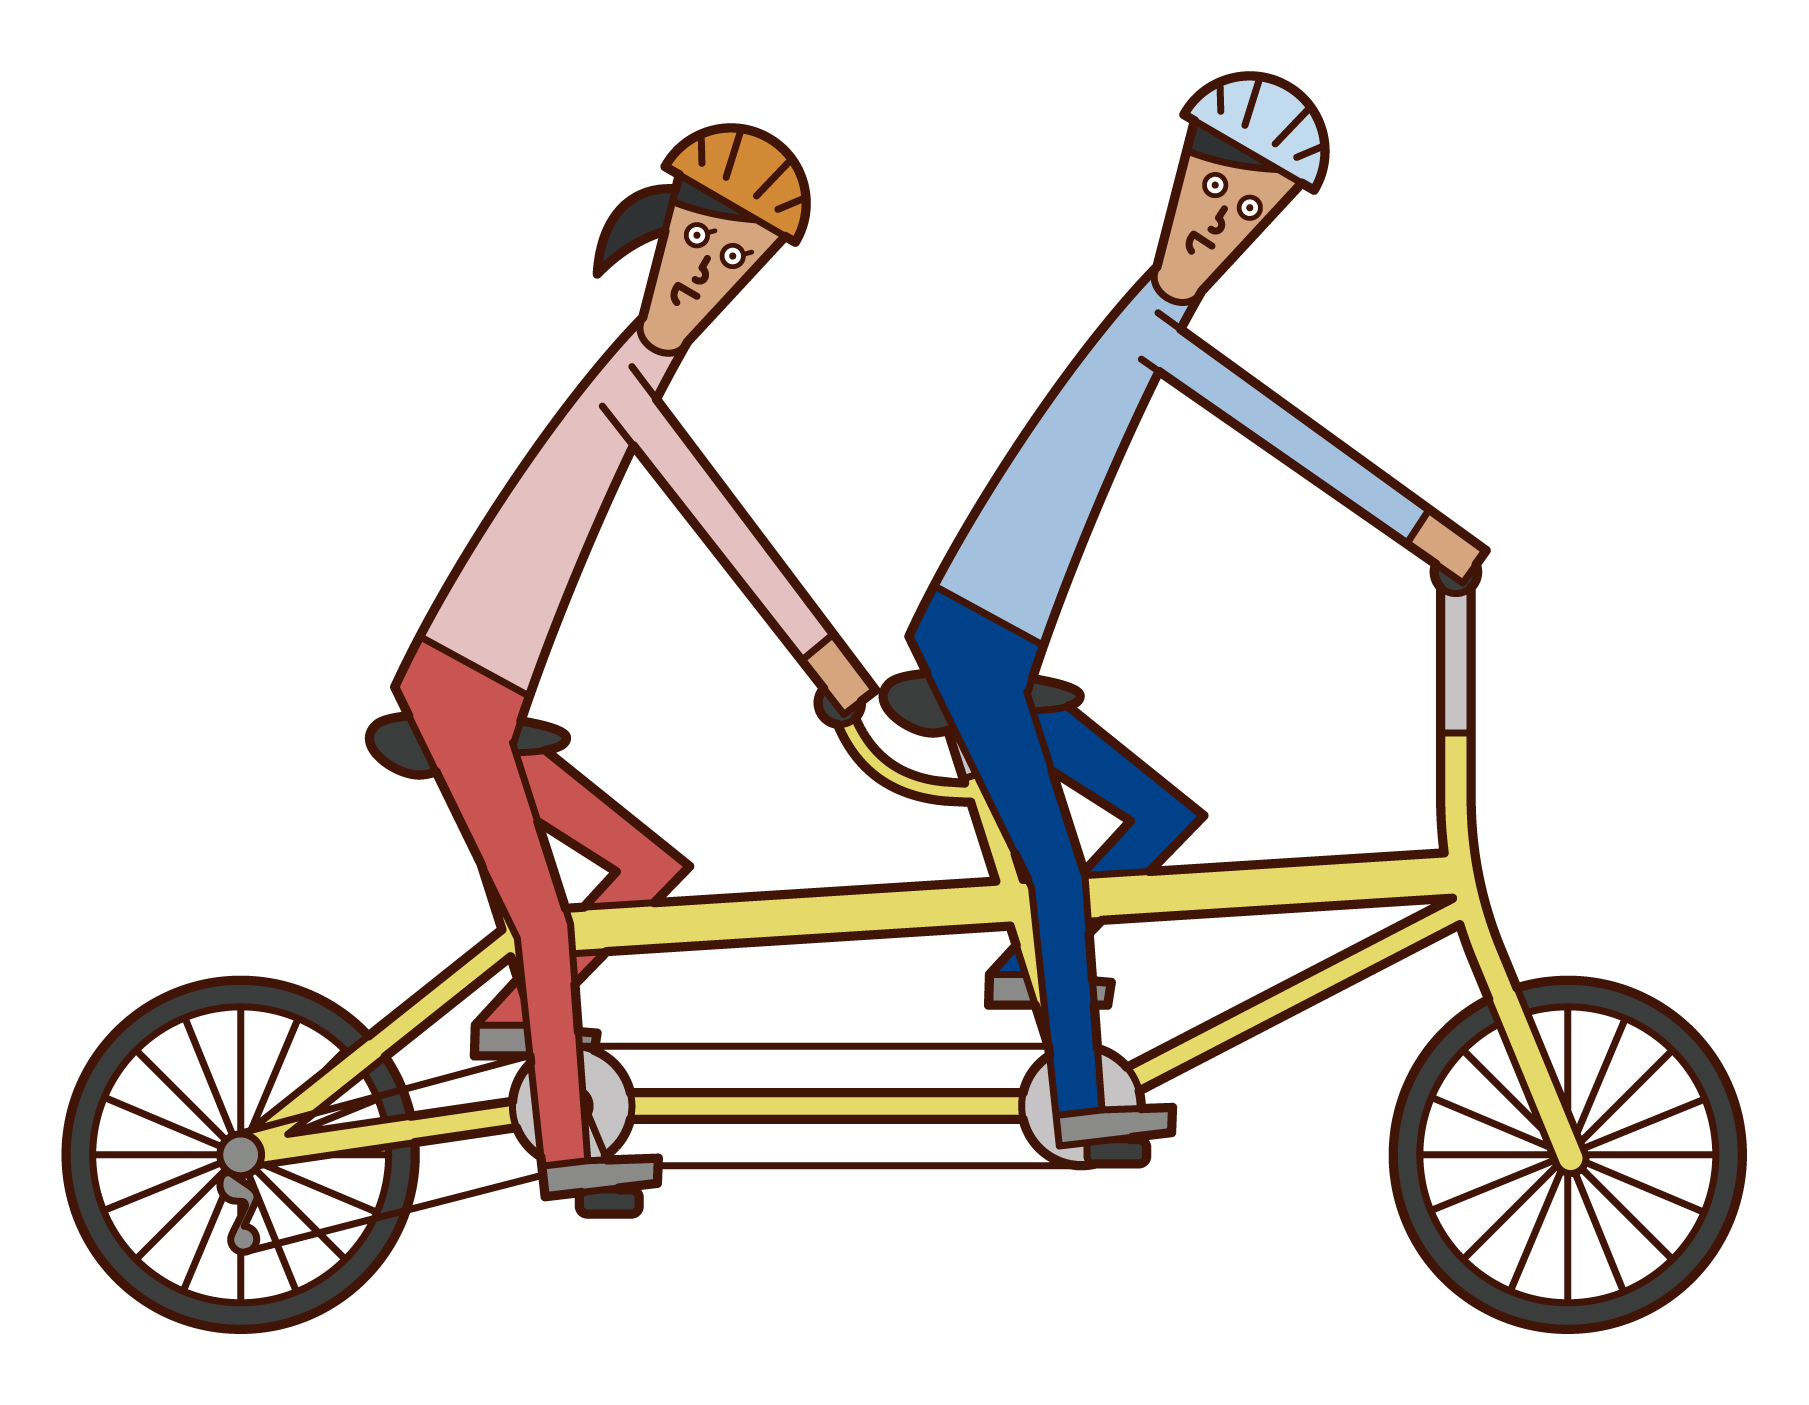 タンデム自転車に乗る人たちのイラスト